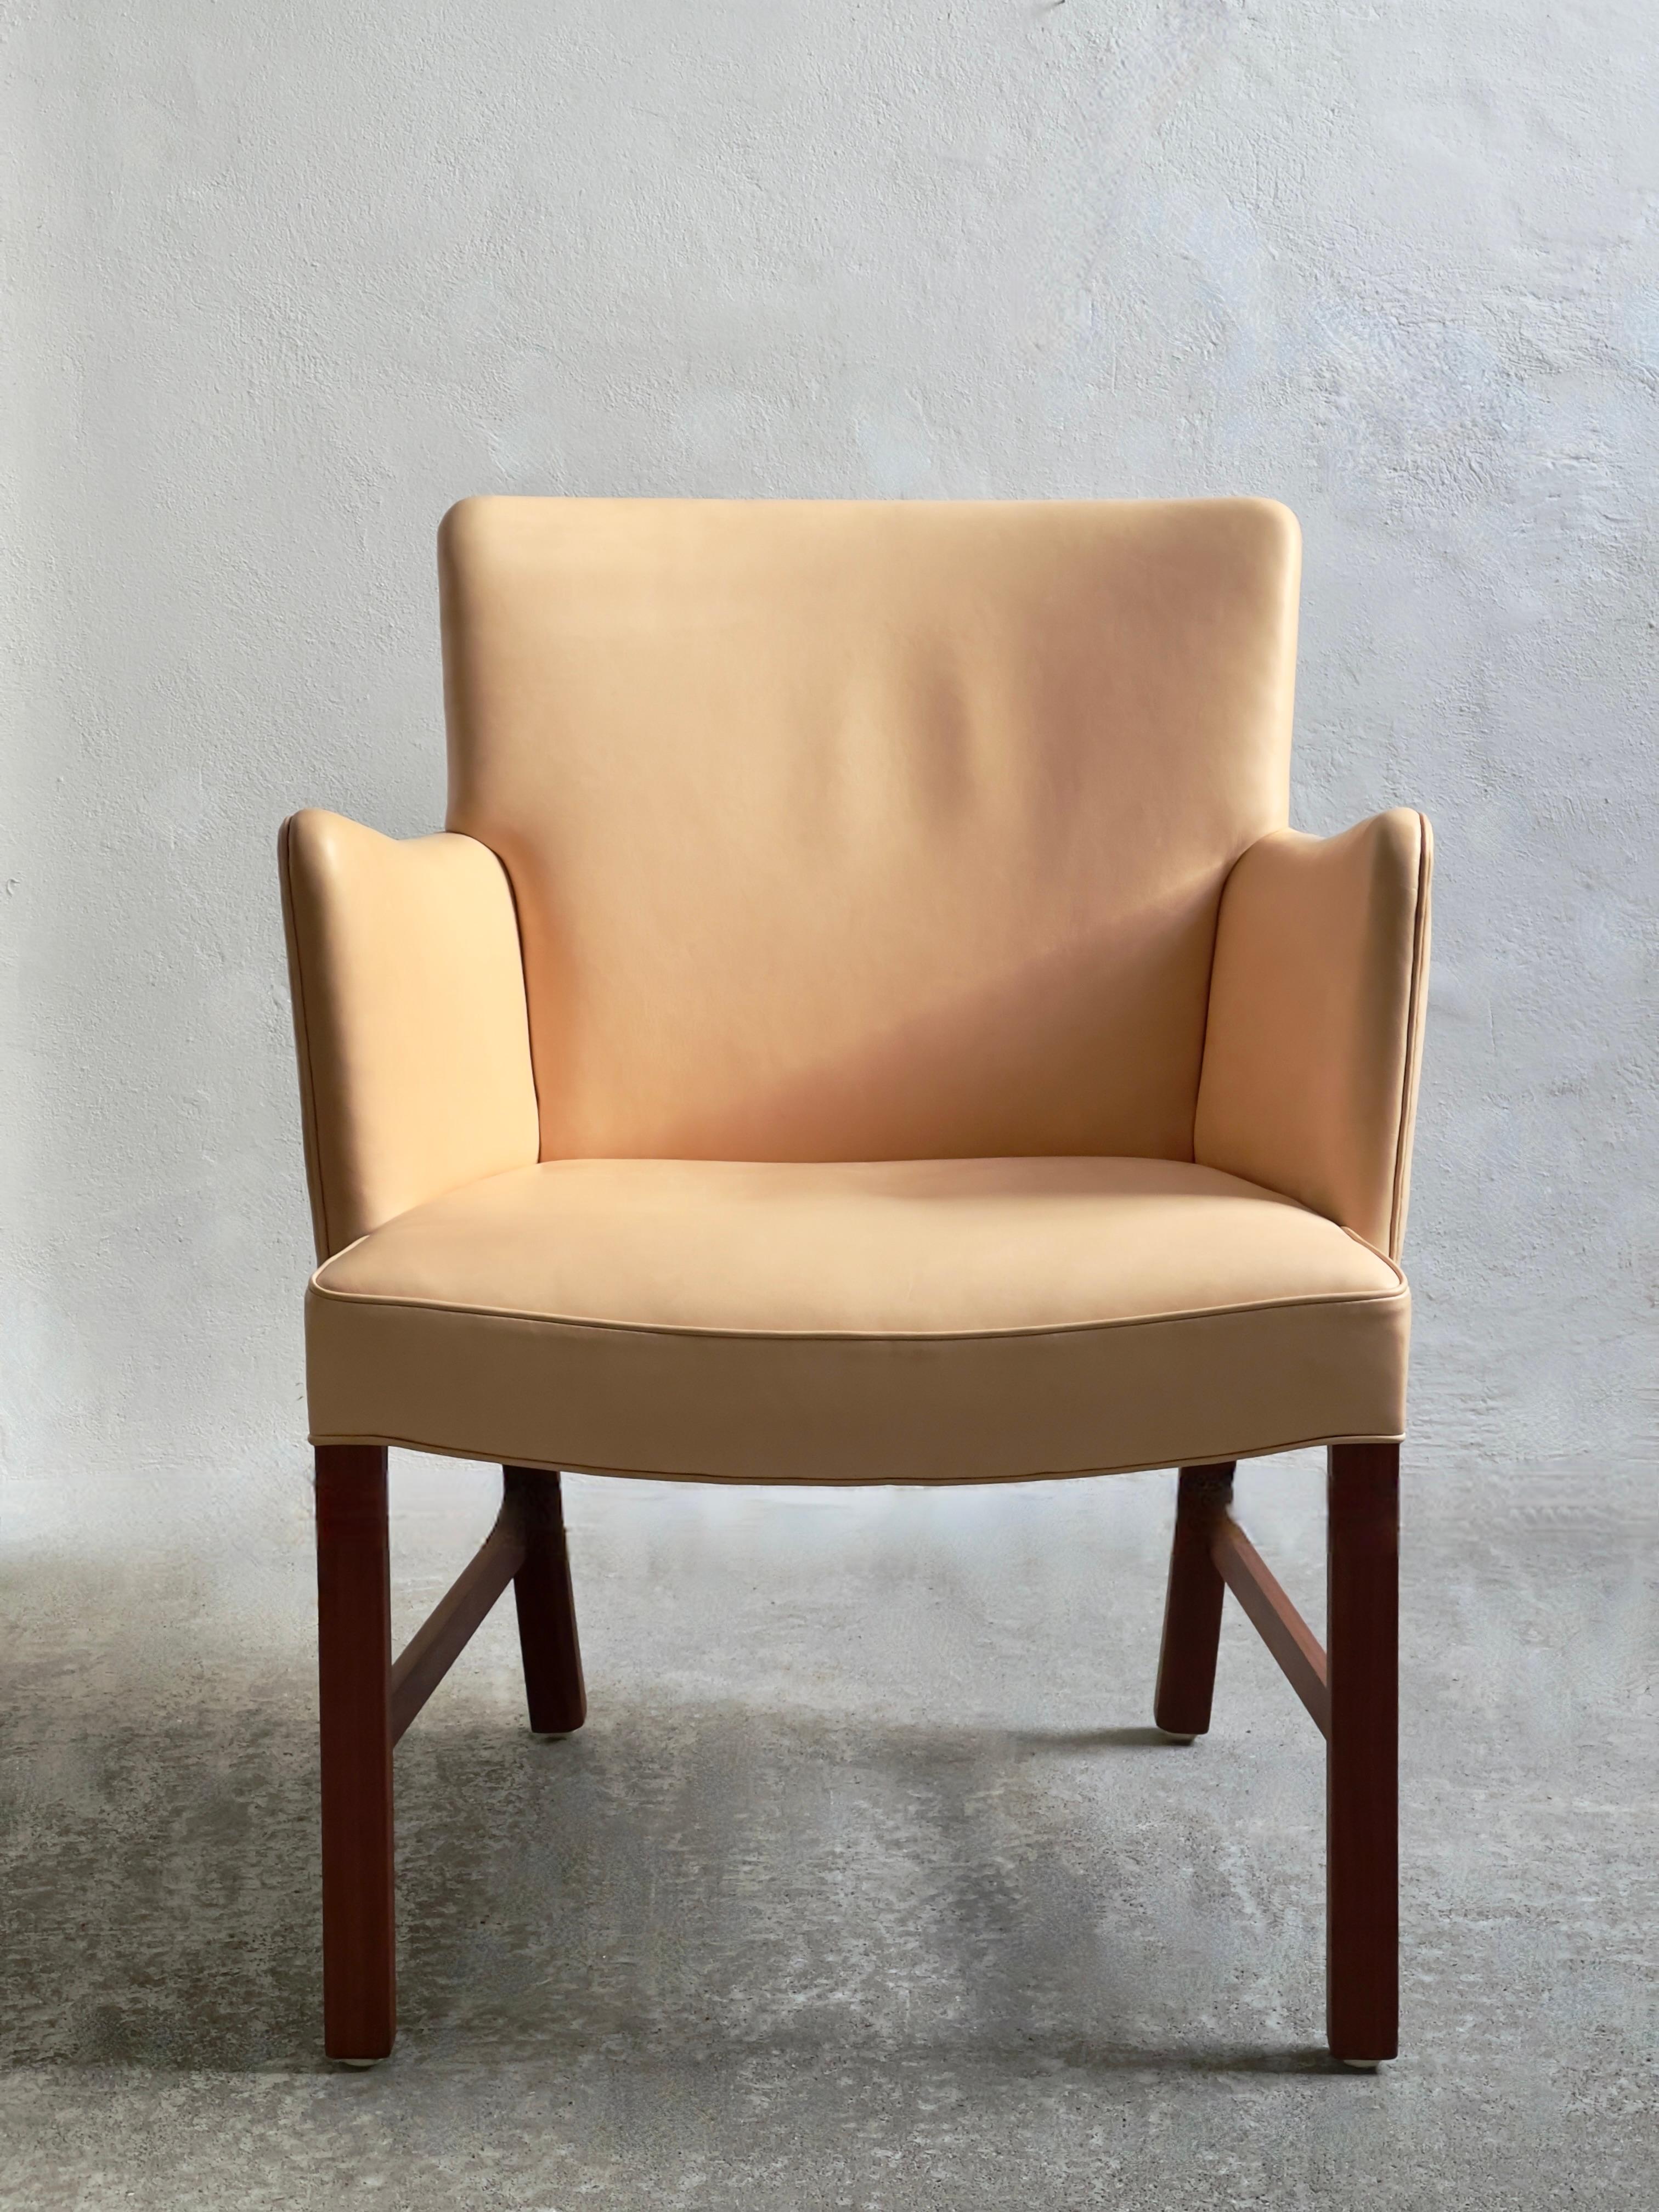 Dieser moderne dänische Sessel von Jacob Kjaer, einem verehrten Tischlermeister und Pionier der Moderne, verkörpert die Essenz der Design-Raffinesse der Mitte des Jahrhunderts. Sie wurde 1960 in Kopenhagen hergestellt und zeugt von Kjaers